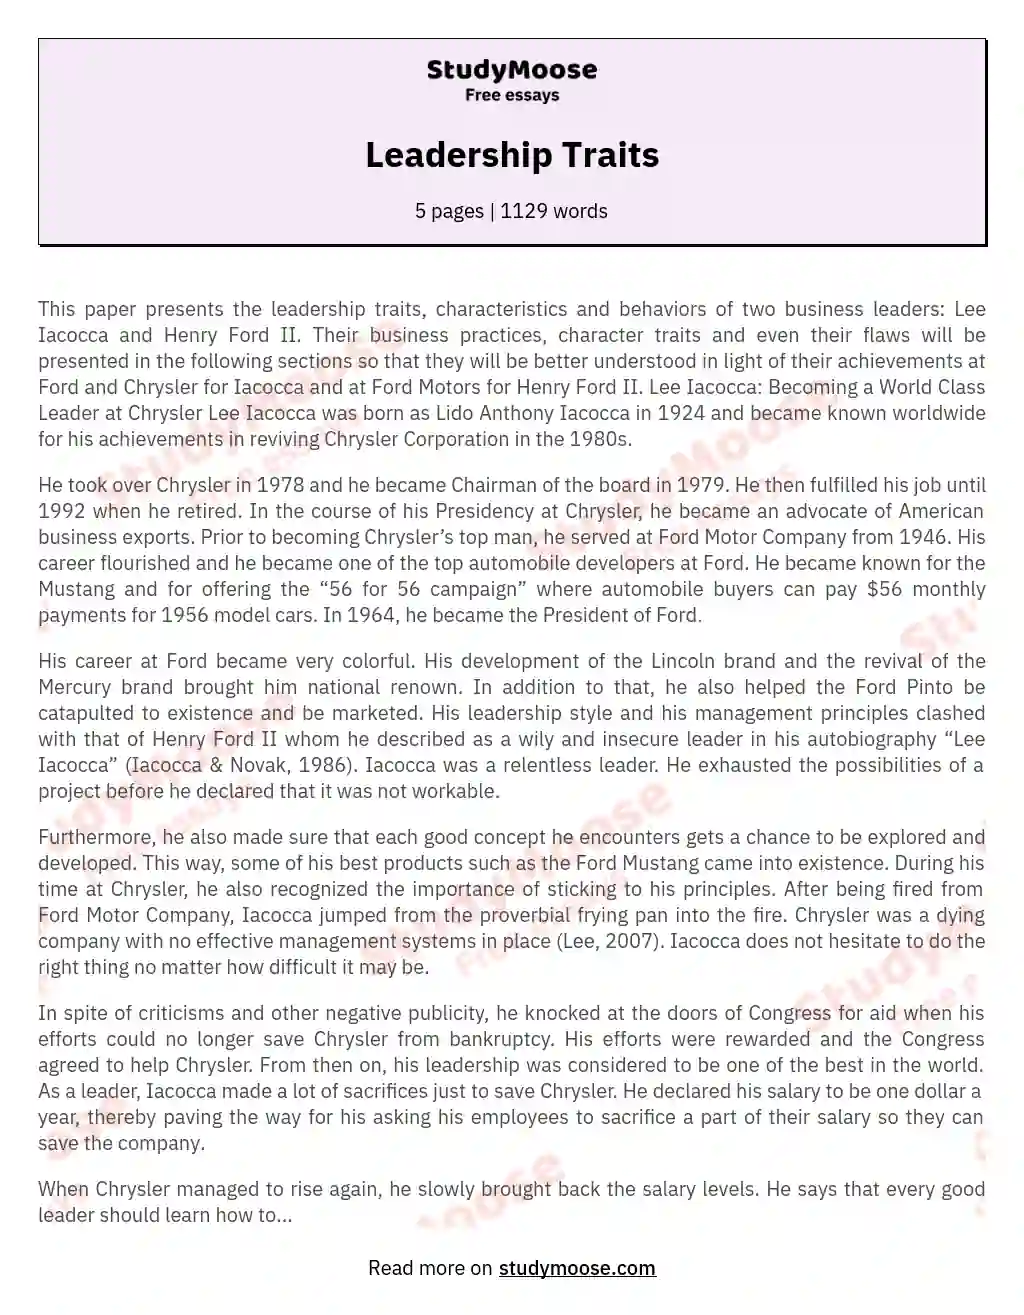 example of leadership traits essay